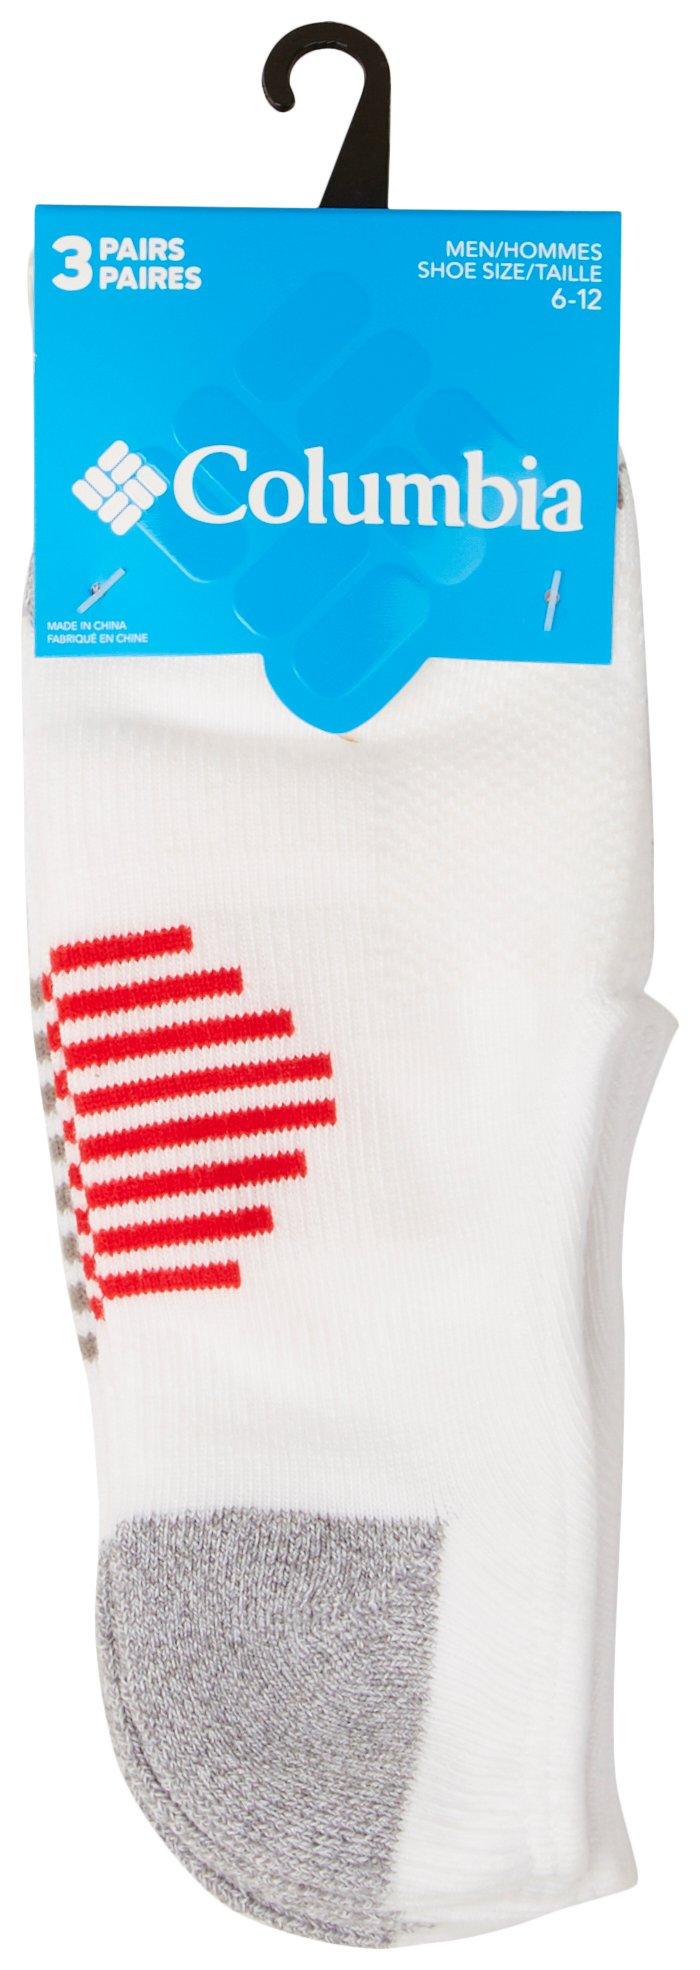 Cole Haan Men's Liner Sock, 10-pair